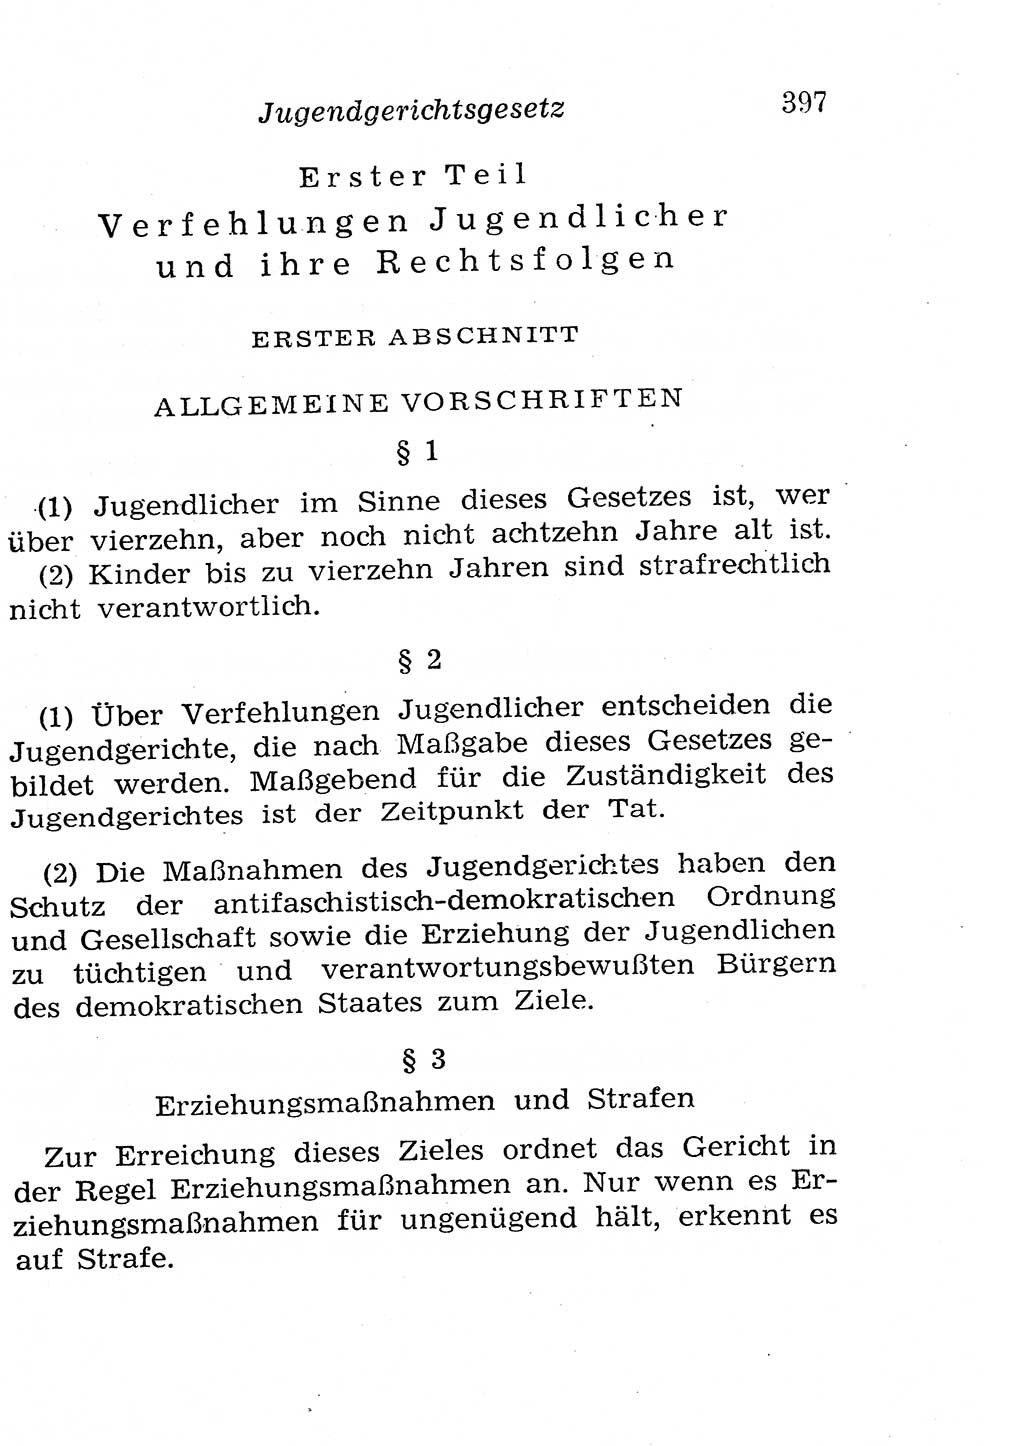 Strafgesetzbuch (StGB) und andere Strafgesetze [Deutsche Demokratische Republik (DDR)] 1958, Seite 397 (StGB Strafges. DDR 1958, S. 397)